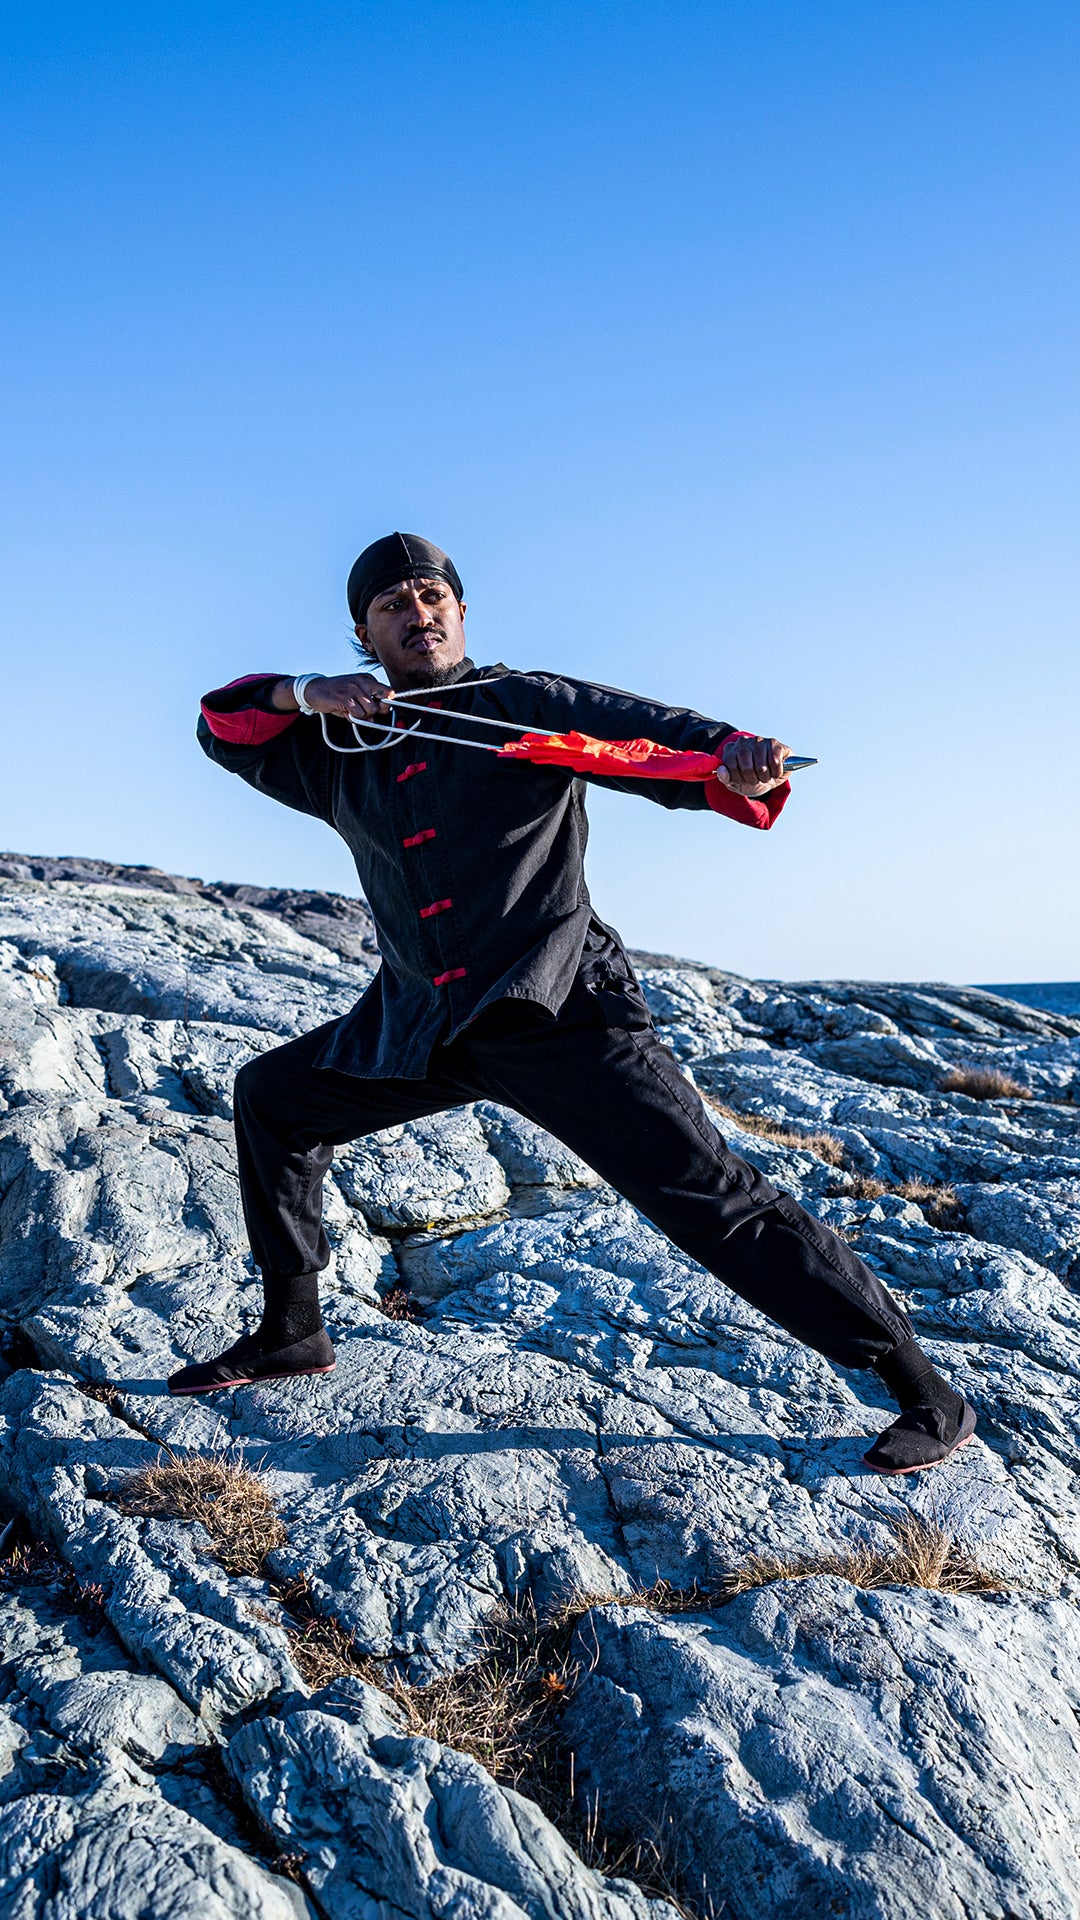 Rob Campbell posing in Kung Fu uniform on rocks near ocean